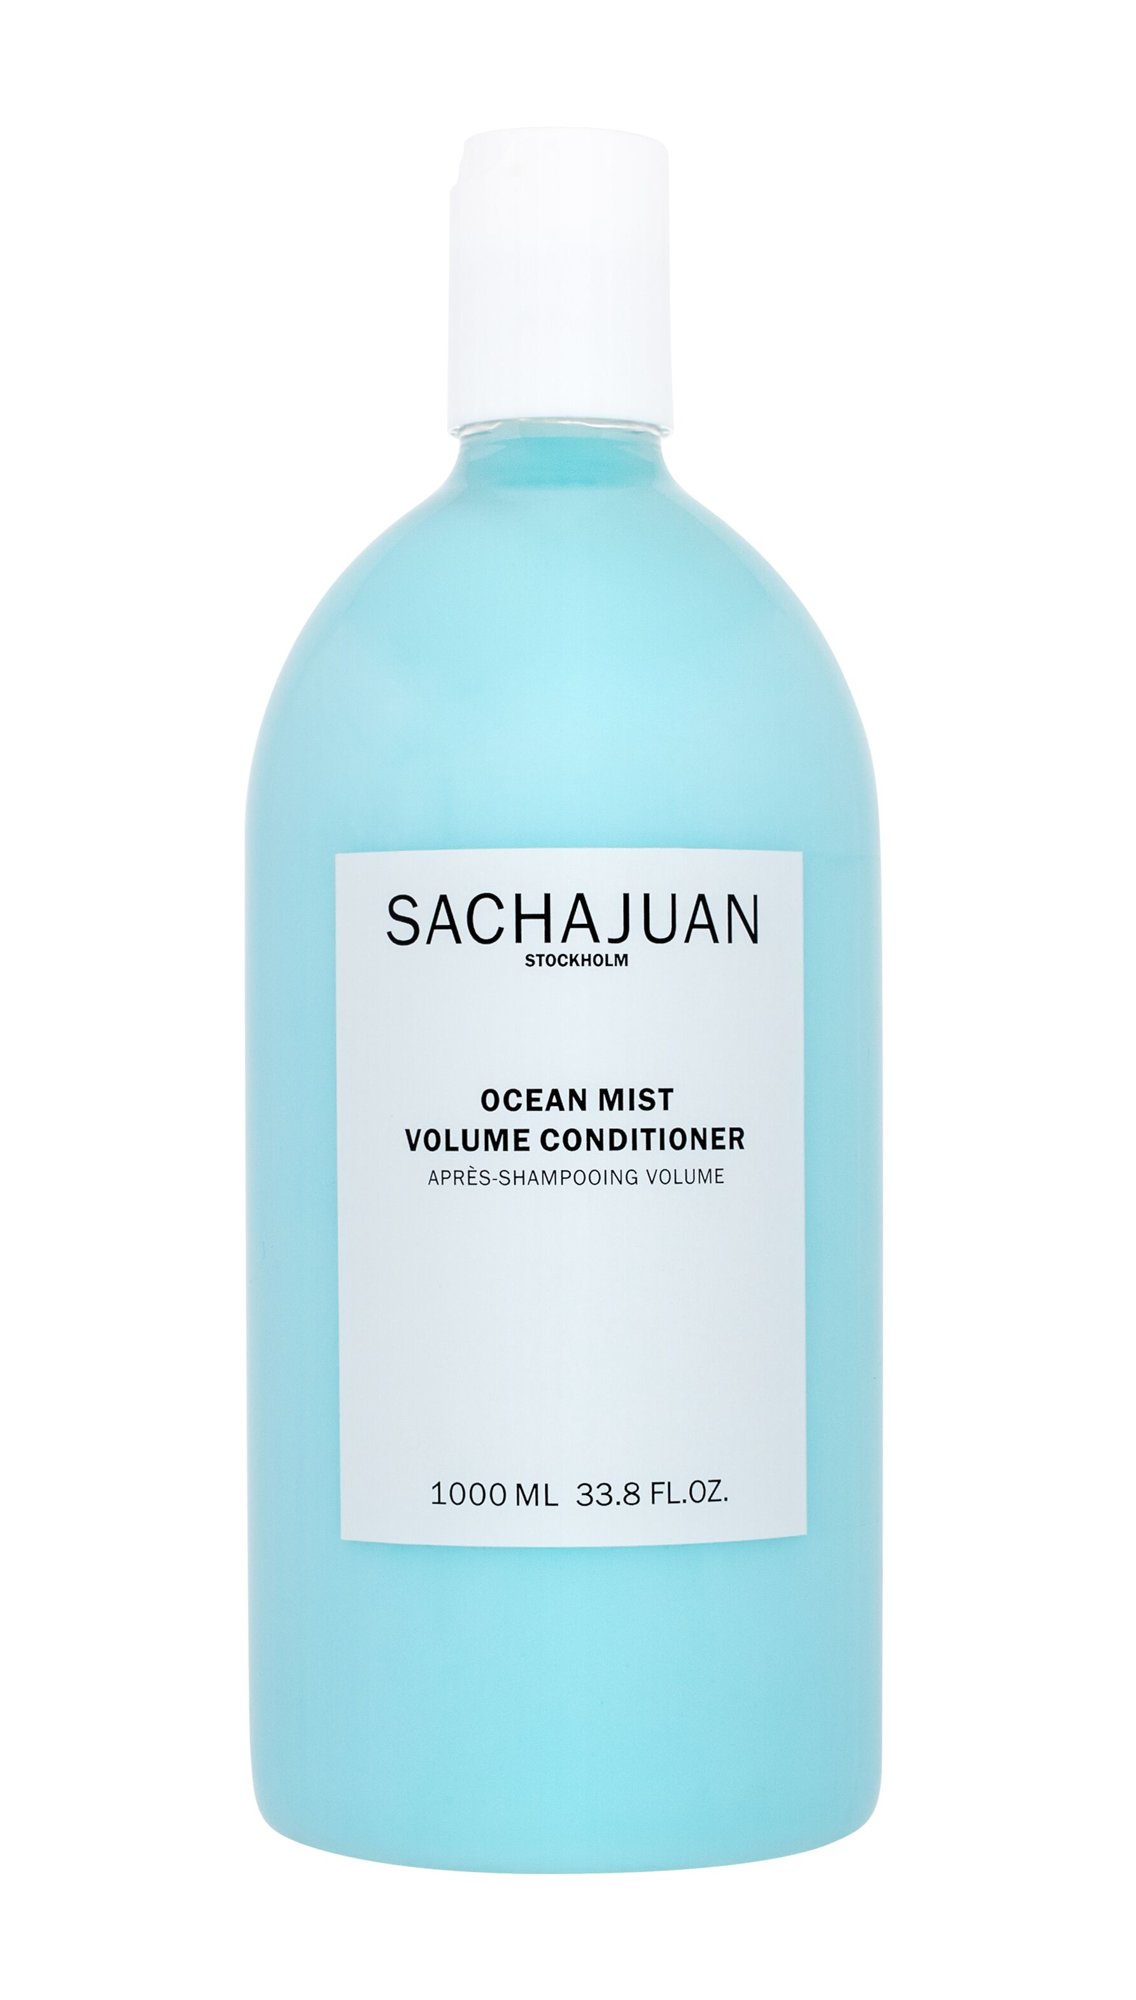 Sachajuan Ocean Mist Volume Conditioner kondicionierius